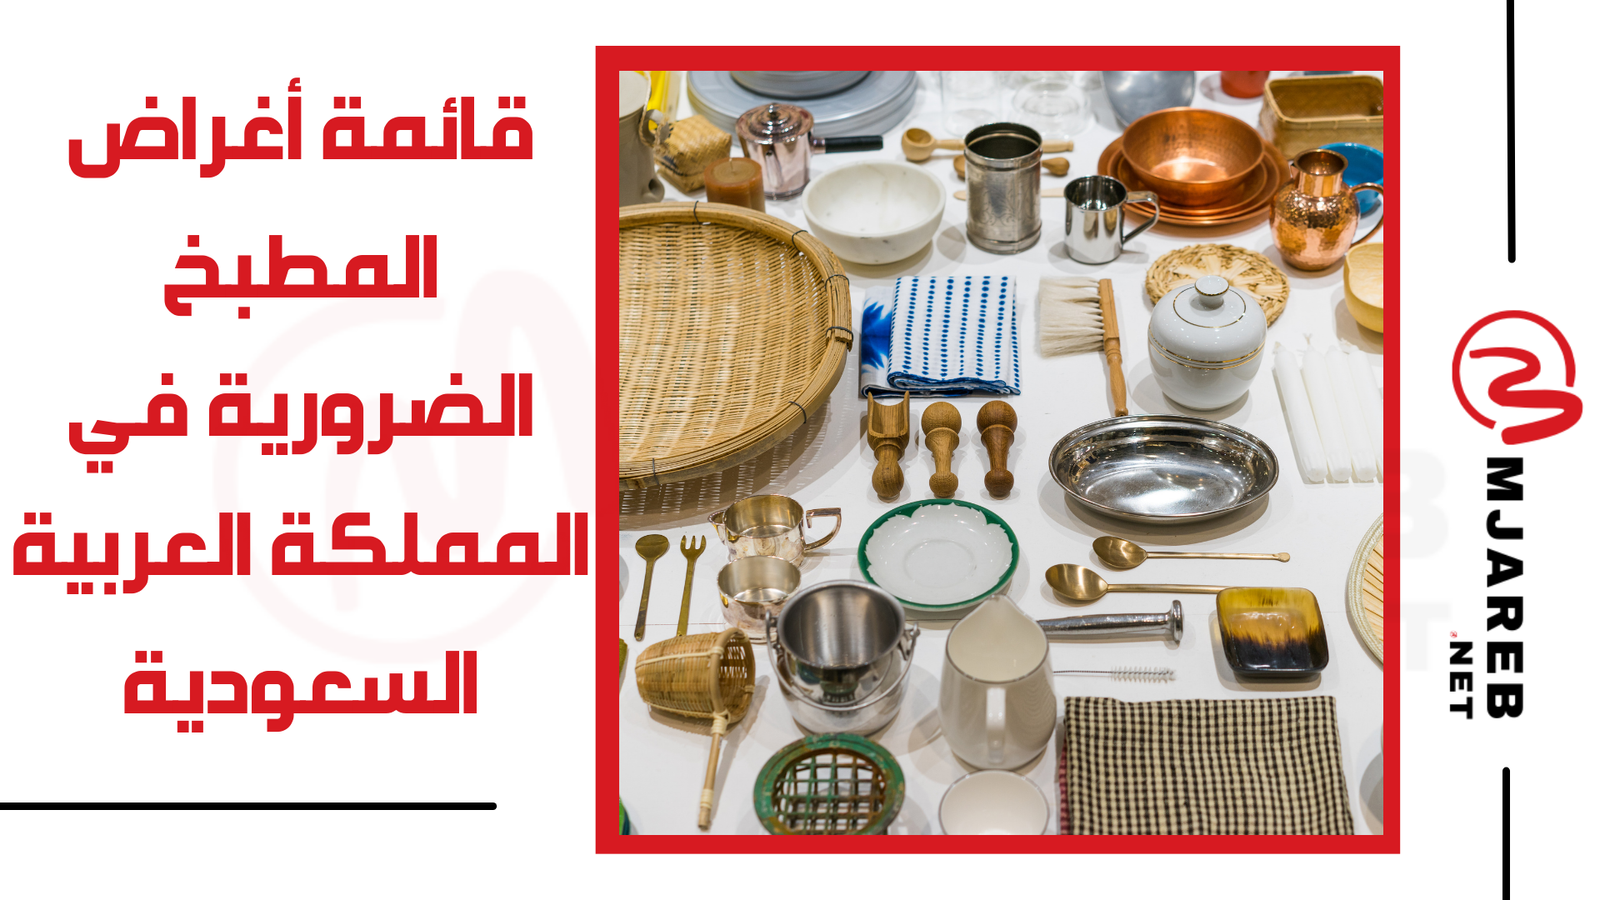 قائمة أغراض المطبخ الضرورية في المملكة العربية السعودية